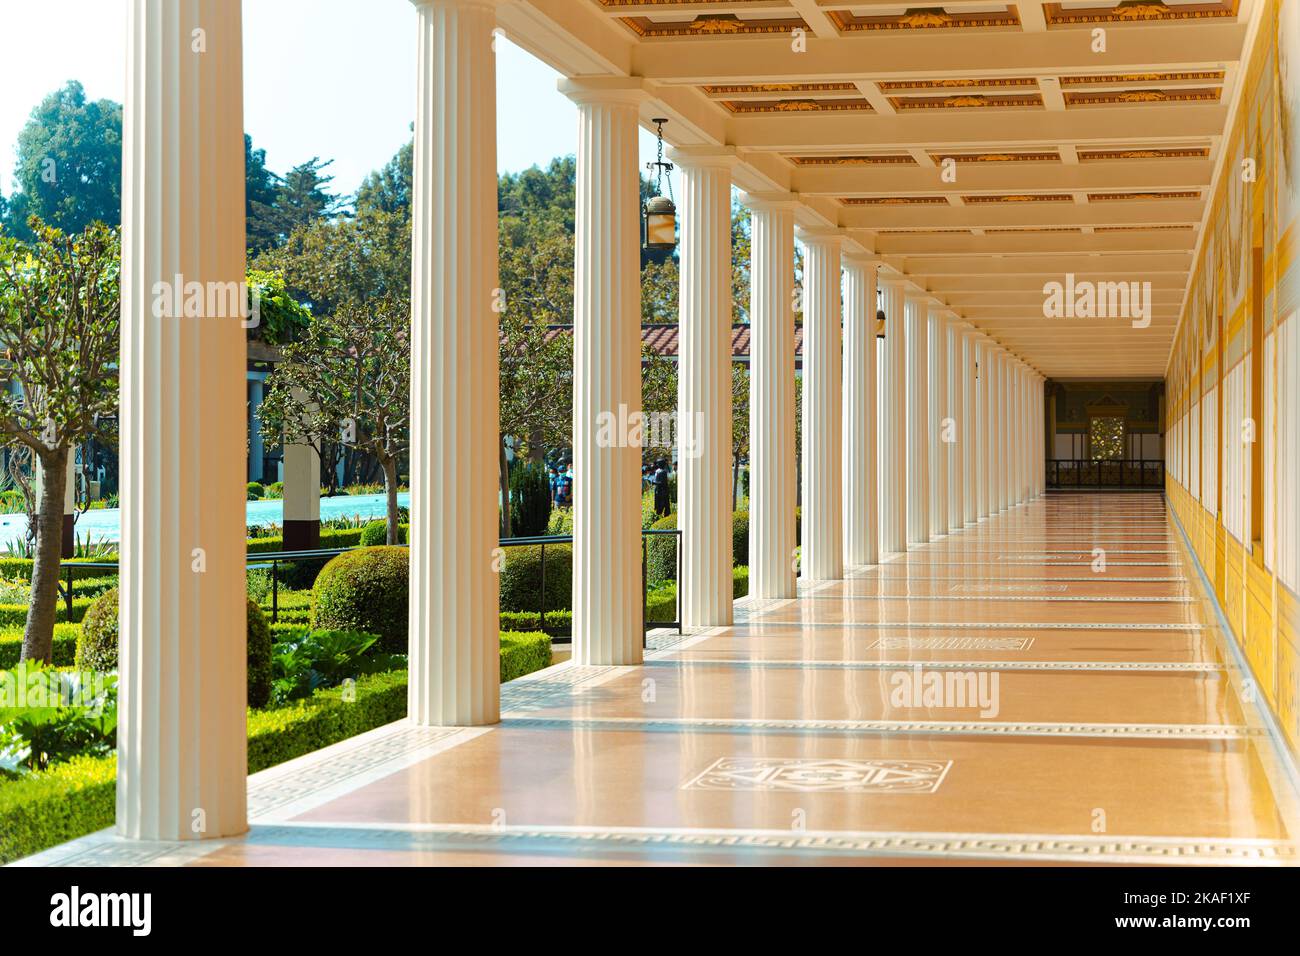 Le luxueux couloir du musée J. Paul Getty villa avec des colonnes blanches et un jardin avec des arbres verts Banque D'Images